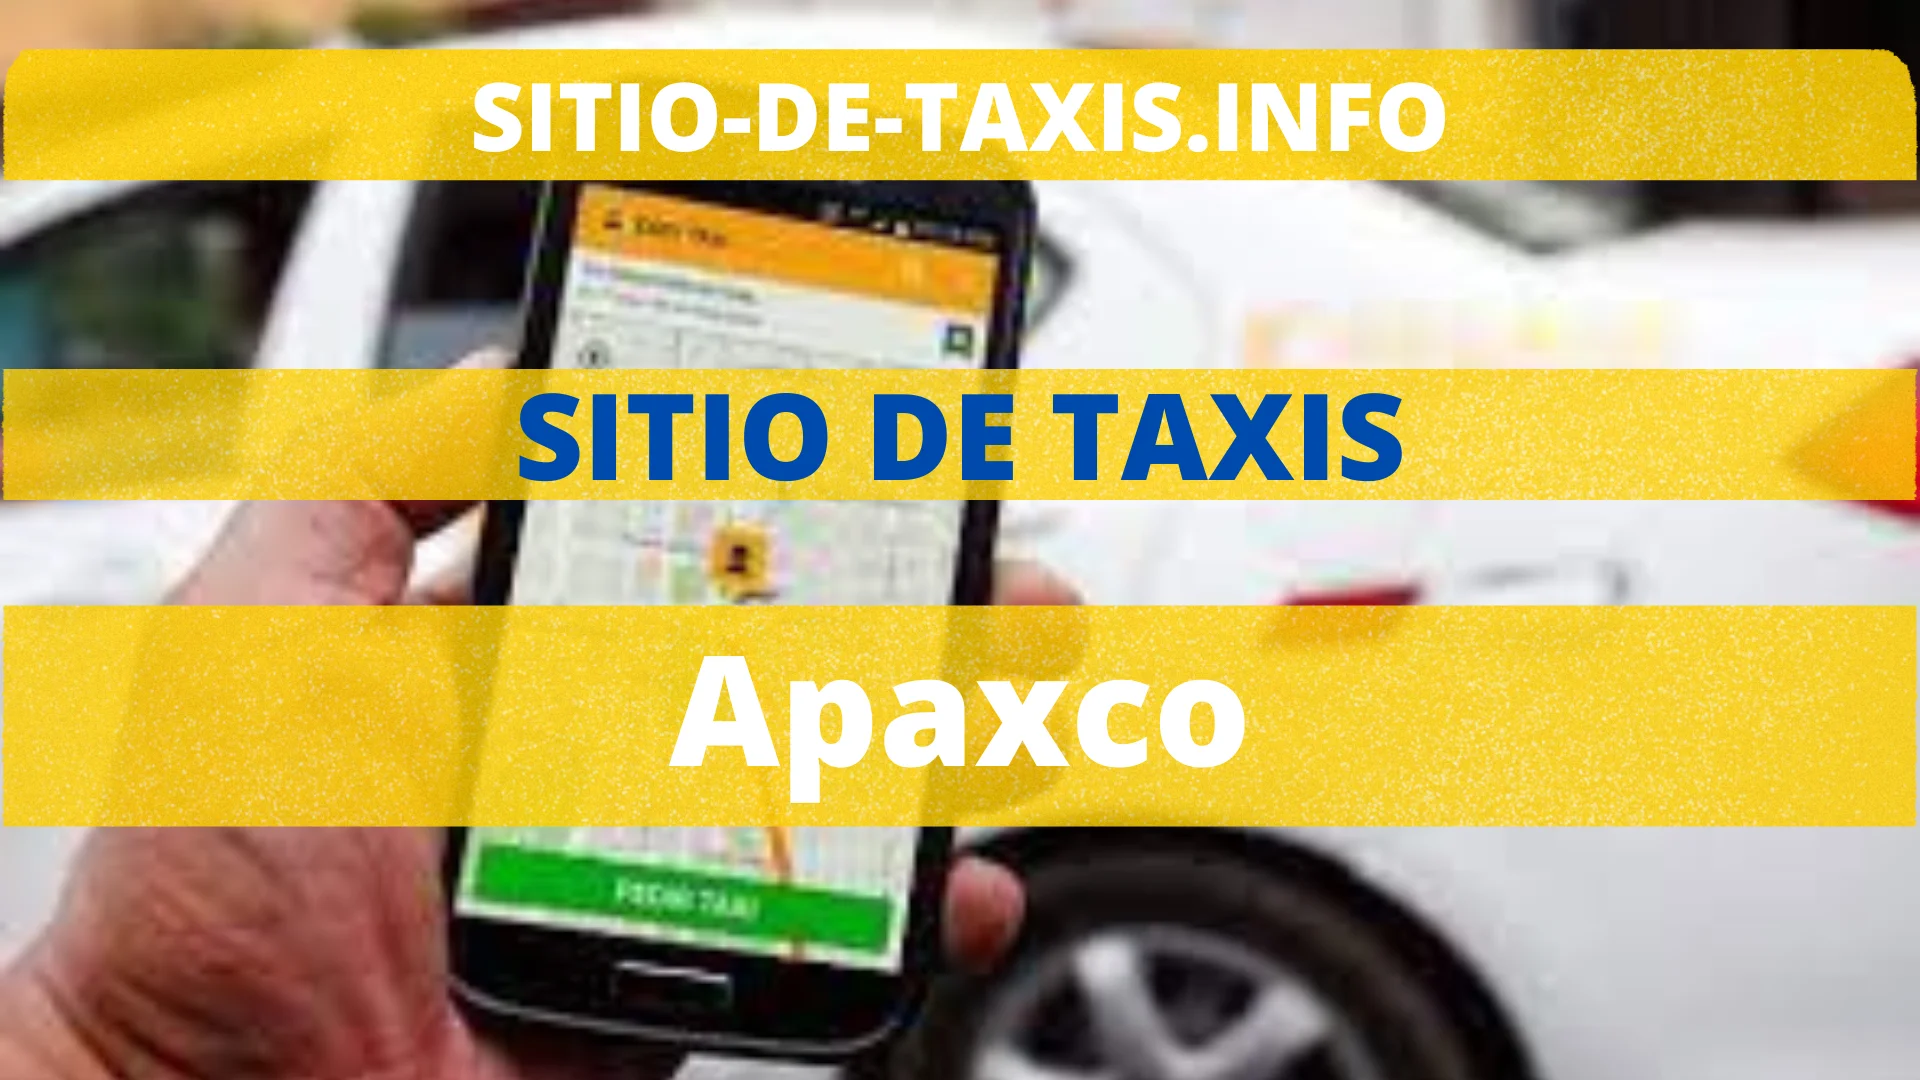 Sitio de taxis Apaxco